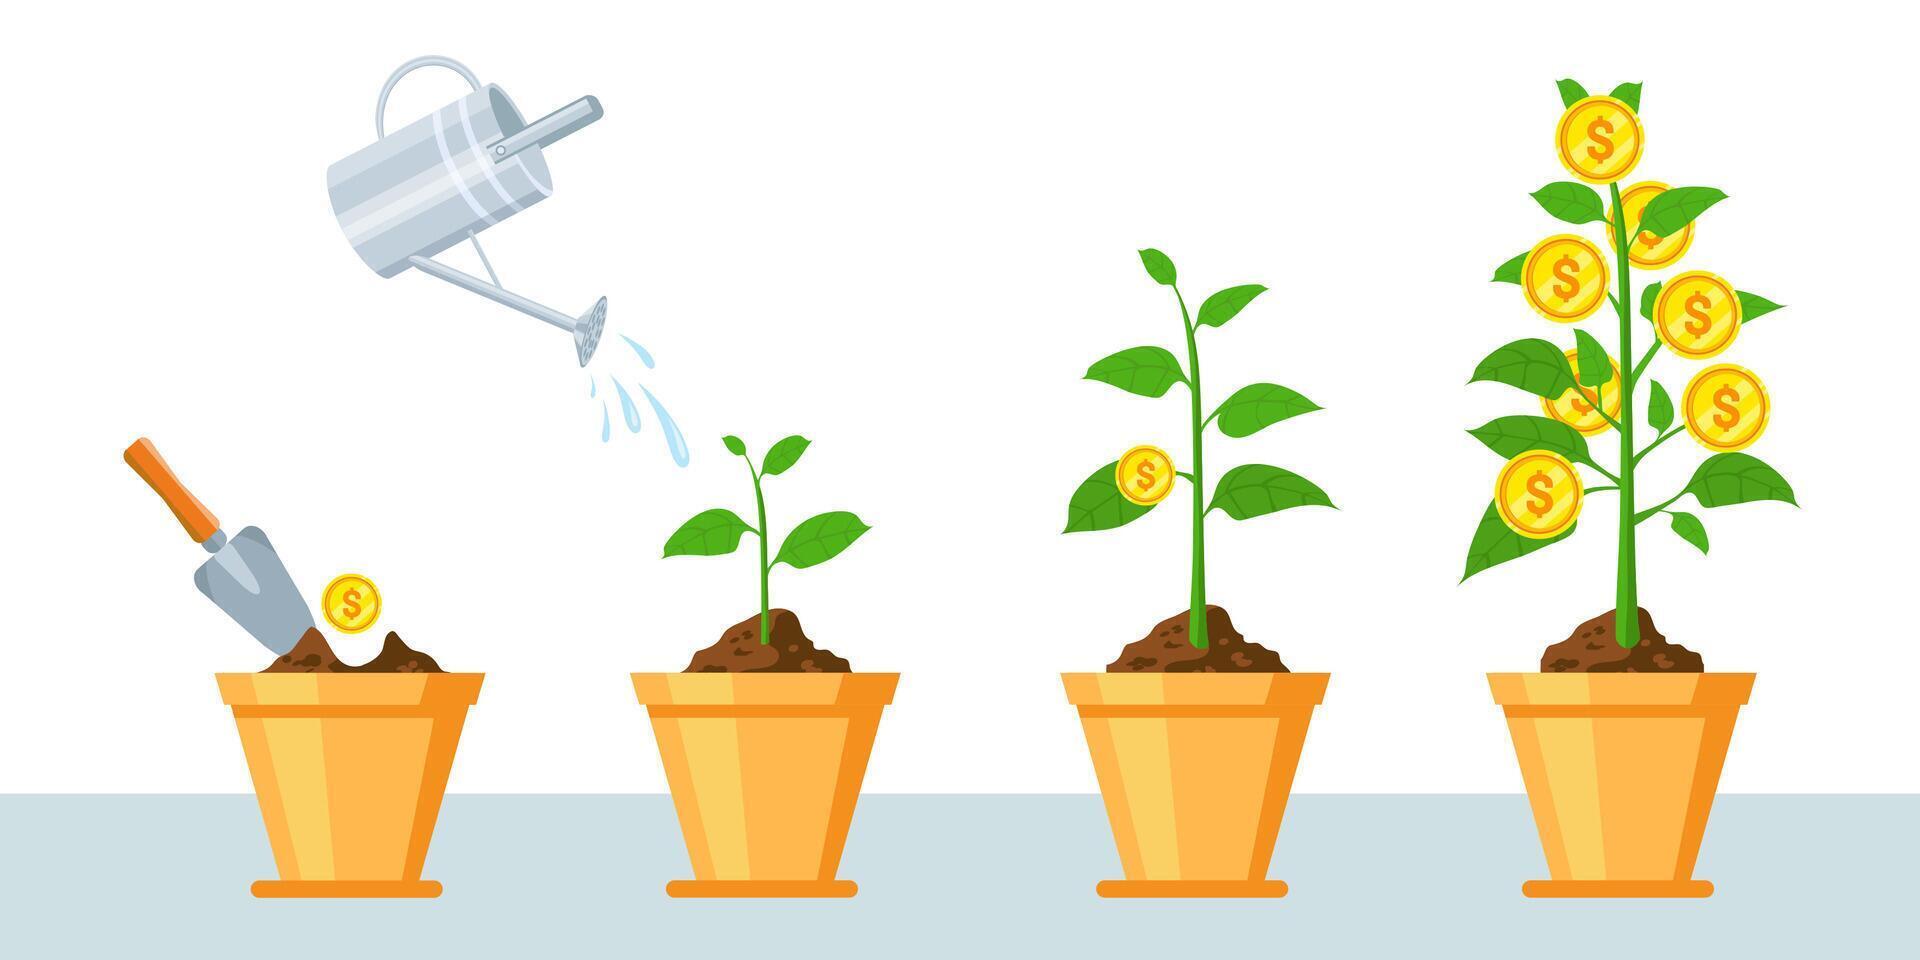 Geld Baum im Topf. Finanzen profitieren Wachstum Infografik mit Stufen von Pflanze wachsen Münzen. Wirtschaft Geschäft Investition oder Einnahmen Vektor Konzept